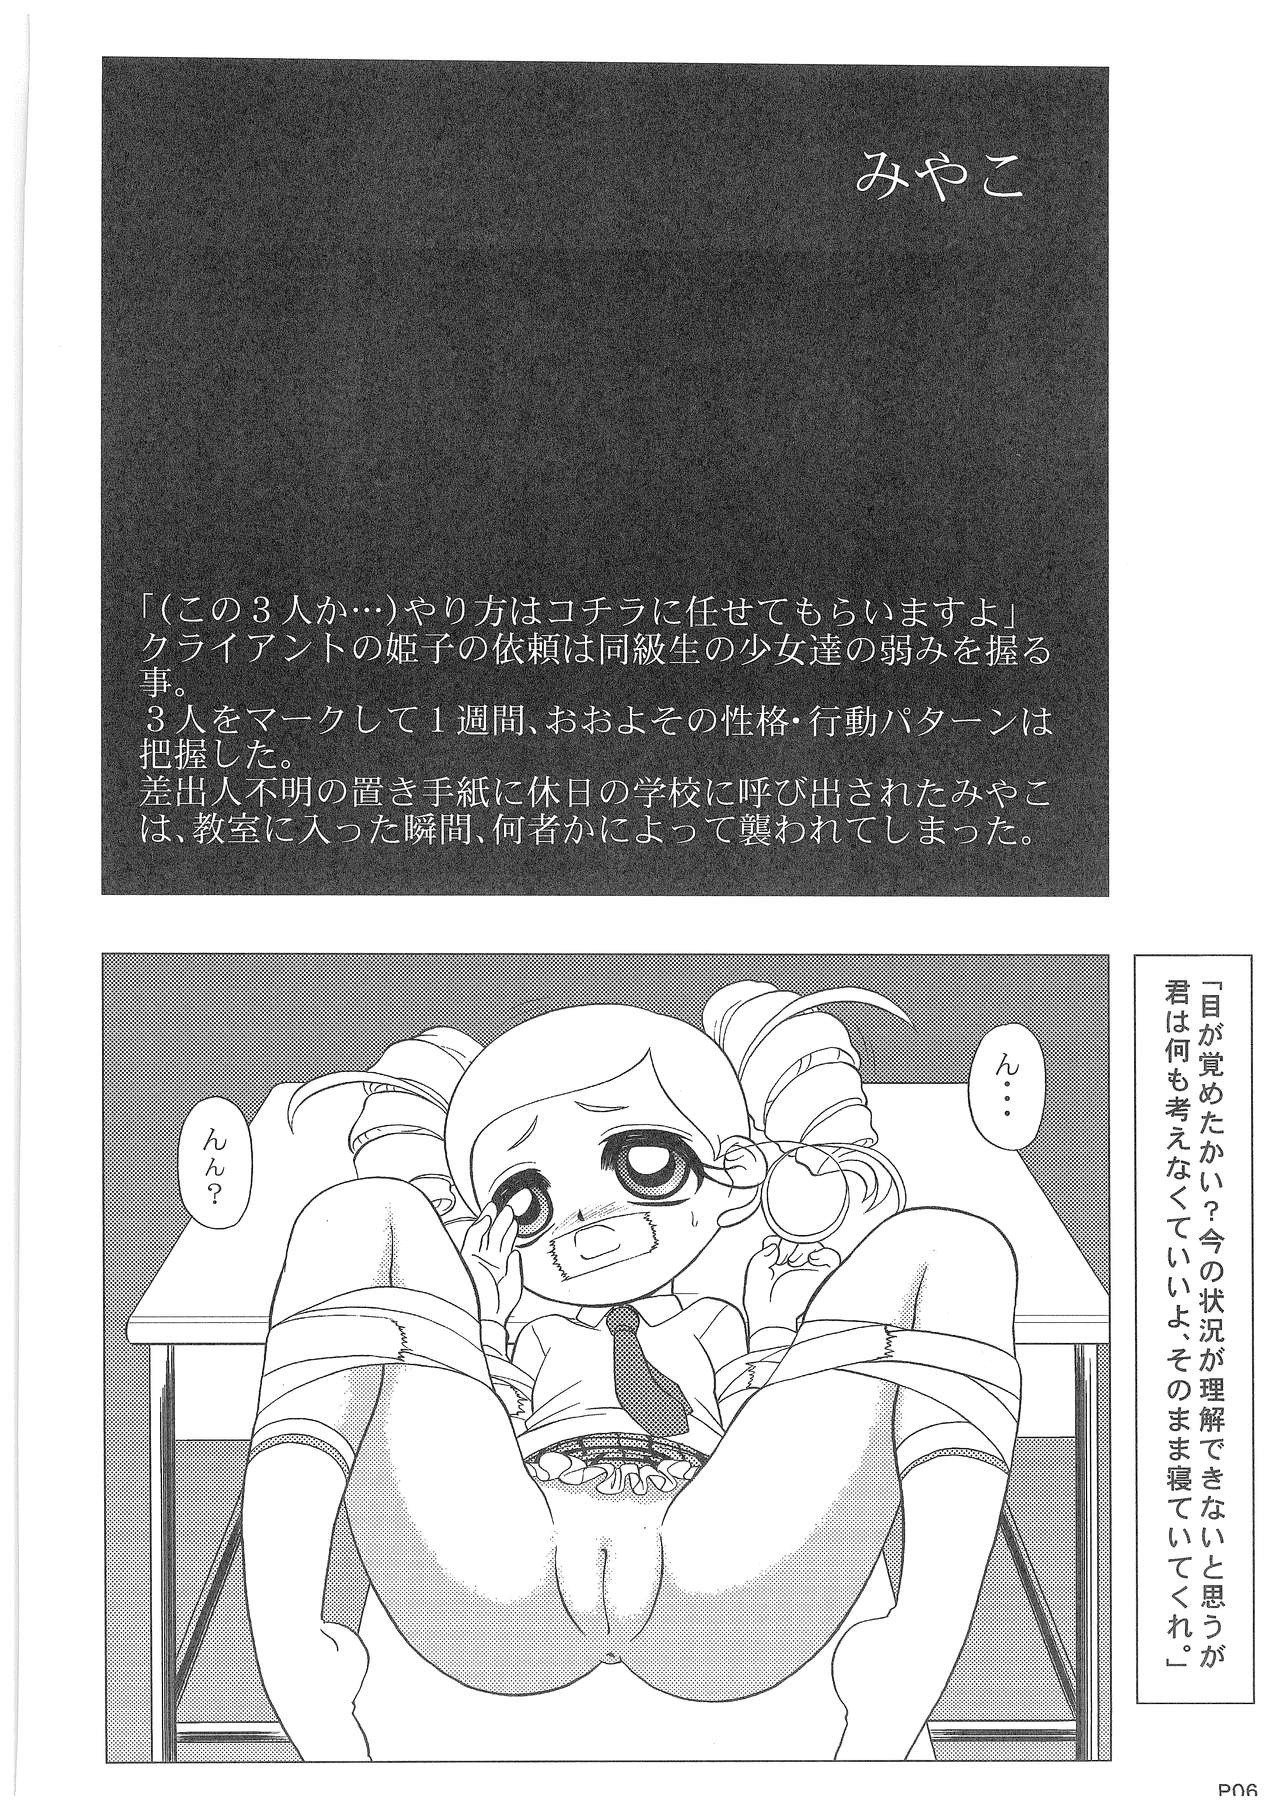 Power Puff Girls Z 001 hentai manga picture 4